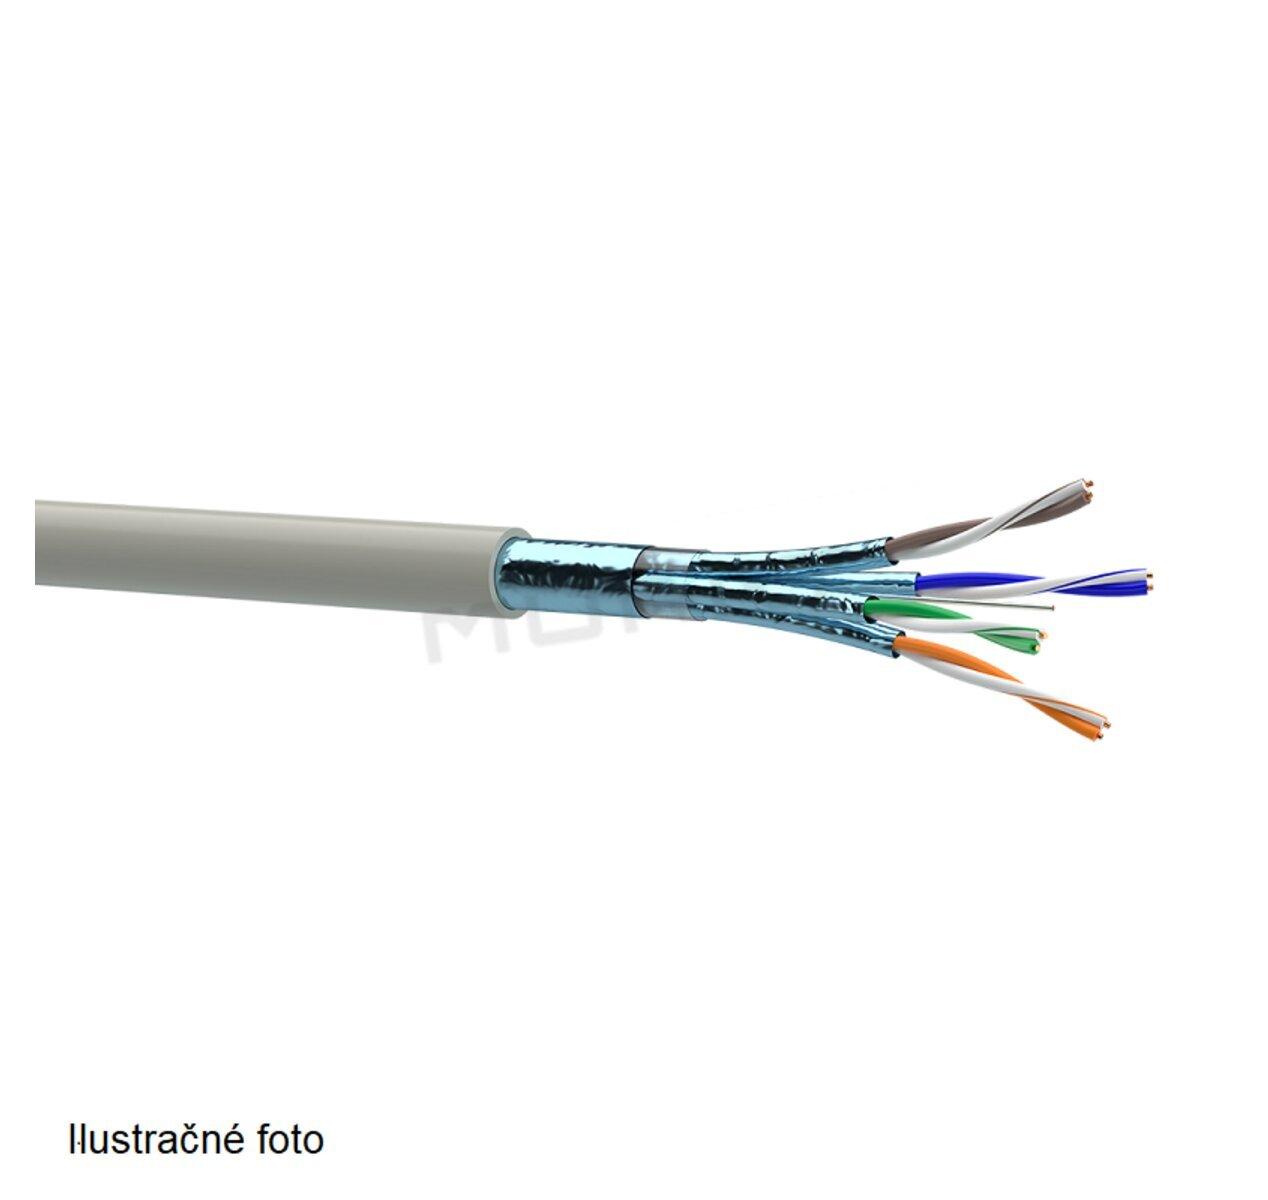 LAN kábel, Cat. 6A, F/FTP, 4x2x0,57, drôt, 500MHz LSOH, fialový 7935048 (OK-NET)